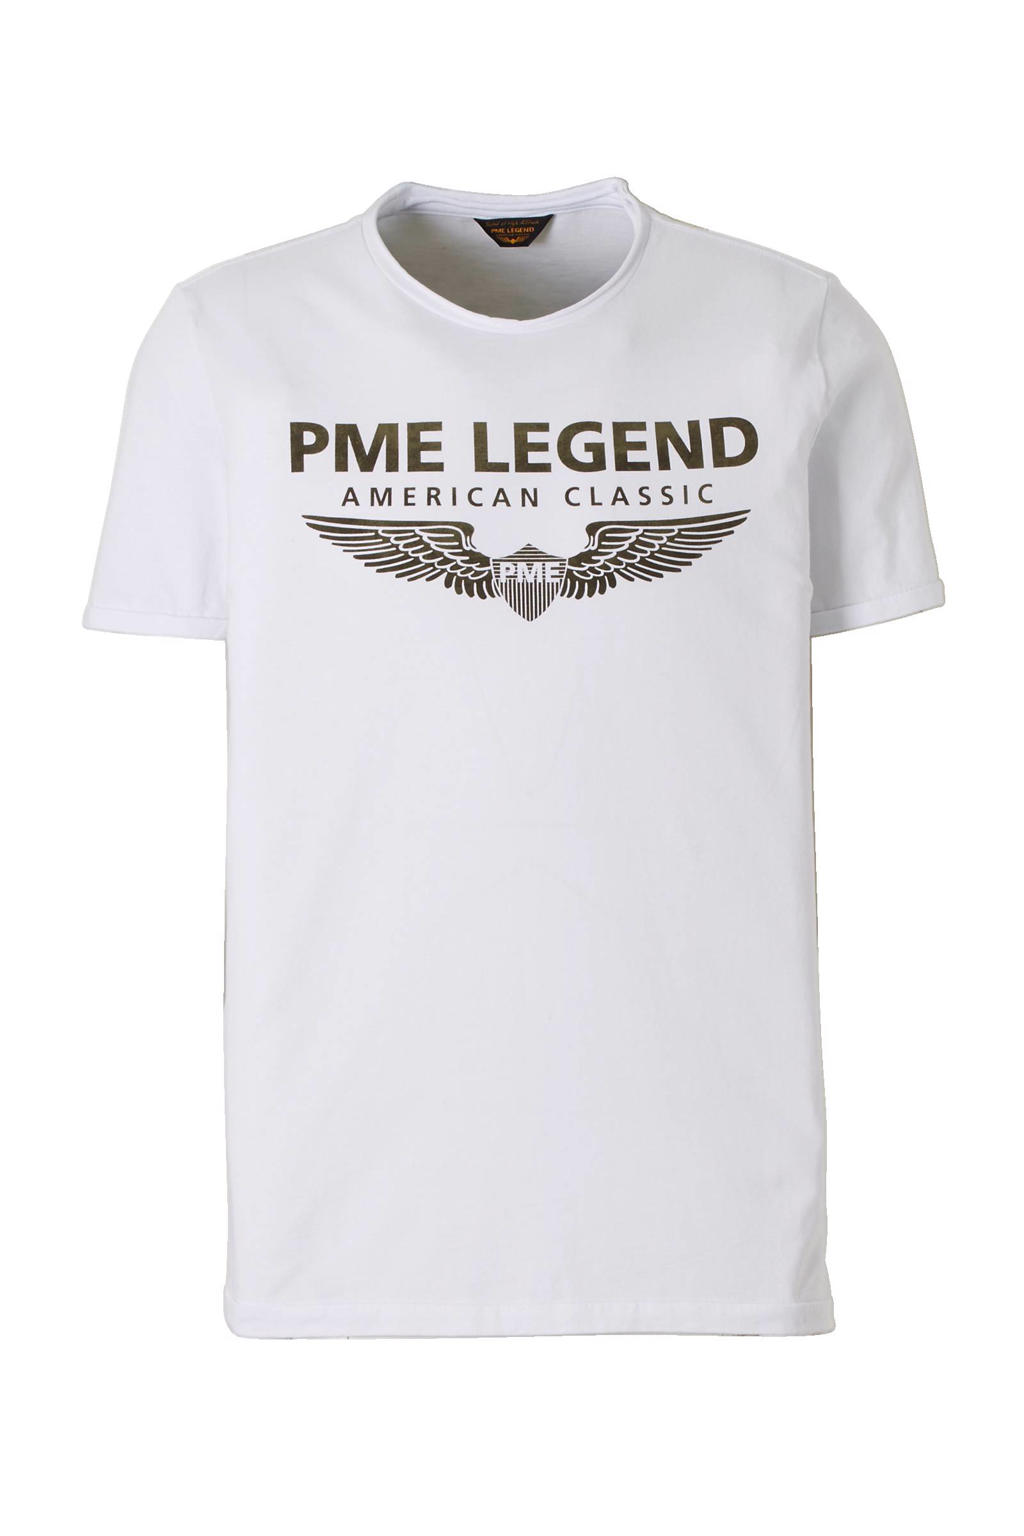 Wit en groene heren PME Legend T-shirt van katoen met logo dessin, korte mouwen en ronde hals